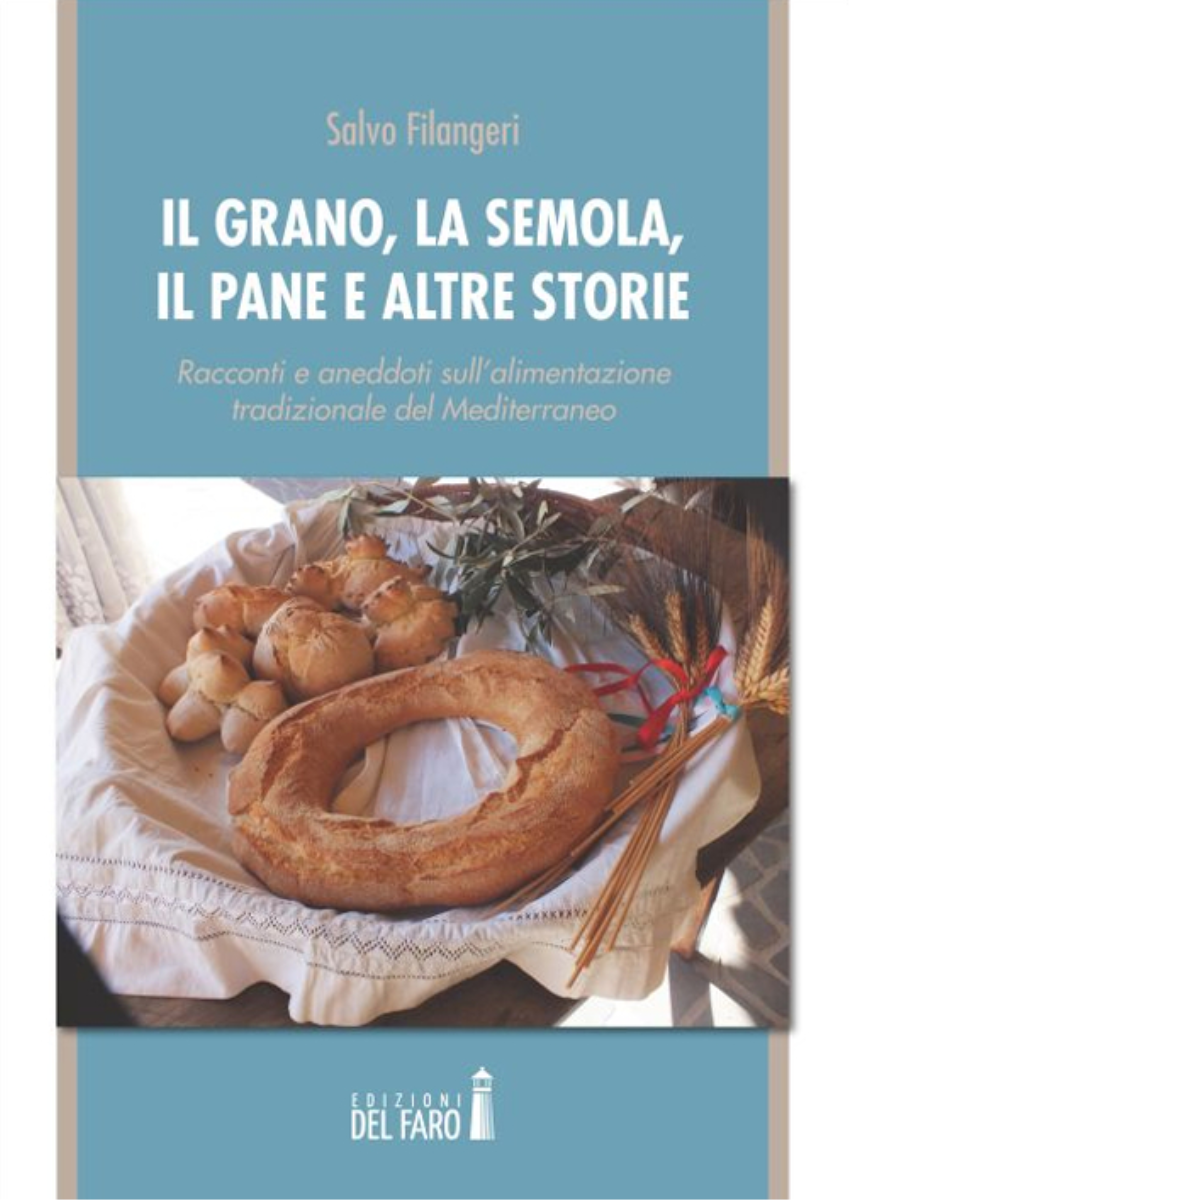 Il grano, la semola, il pane e altre storie di Filangeri Salvo - Del faro, 2015